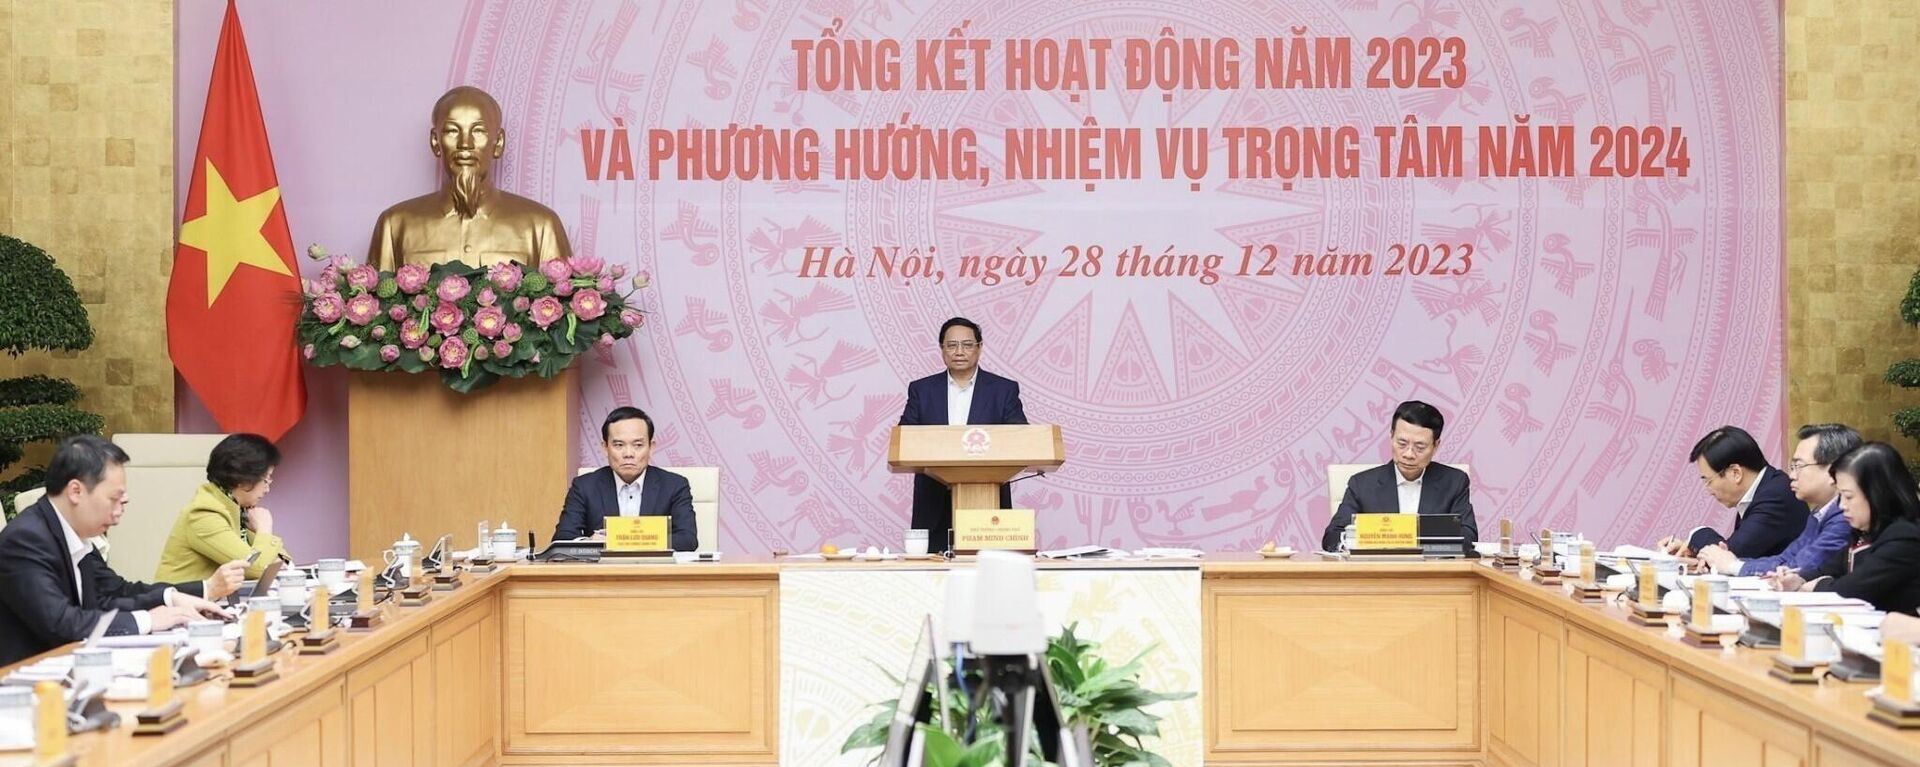 Thủ tướng Phạm Minh Chính, Chủ tịch Uỷ ban phát biểu kết luận phiên họp - Sputnik Việt Nam, 1920, 28.12.2023